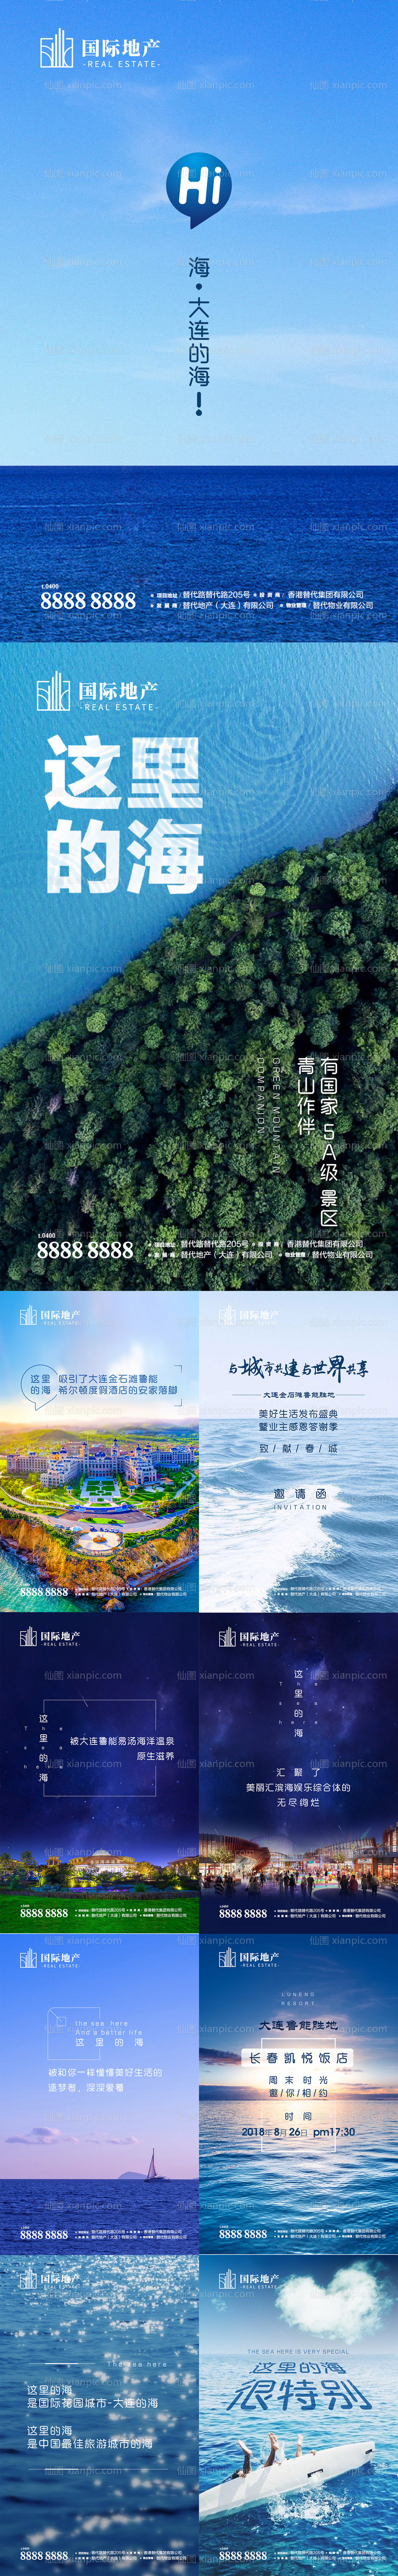 素材乐-高端旅游商业地产创意排版微信h5海报